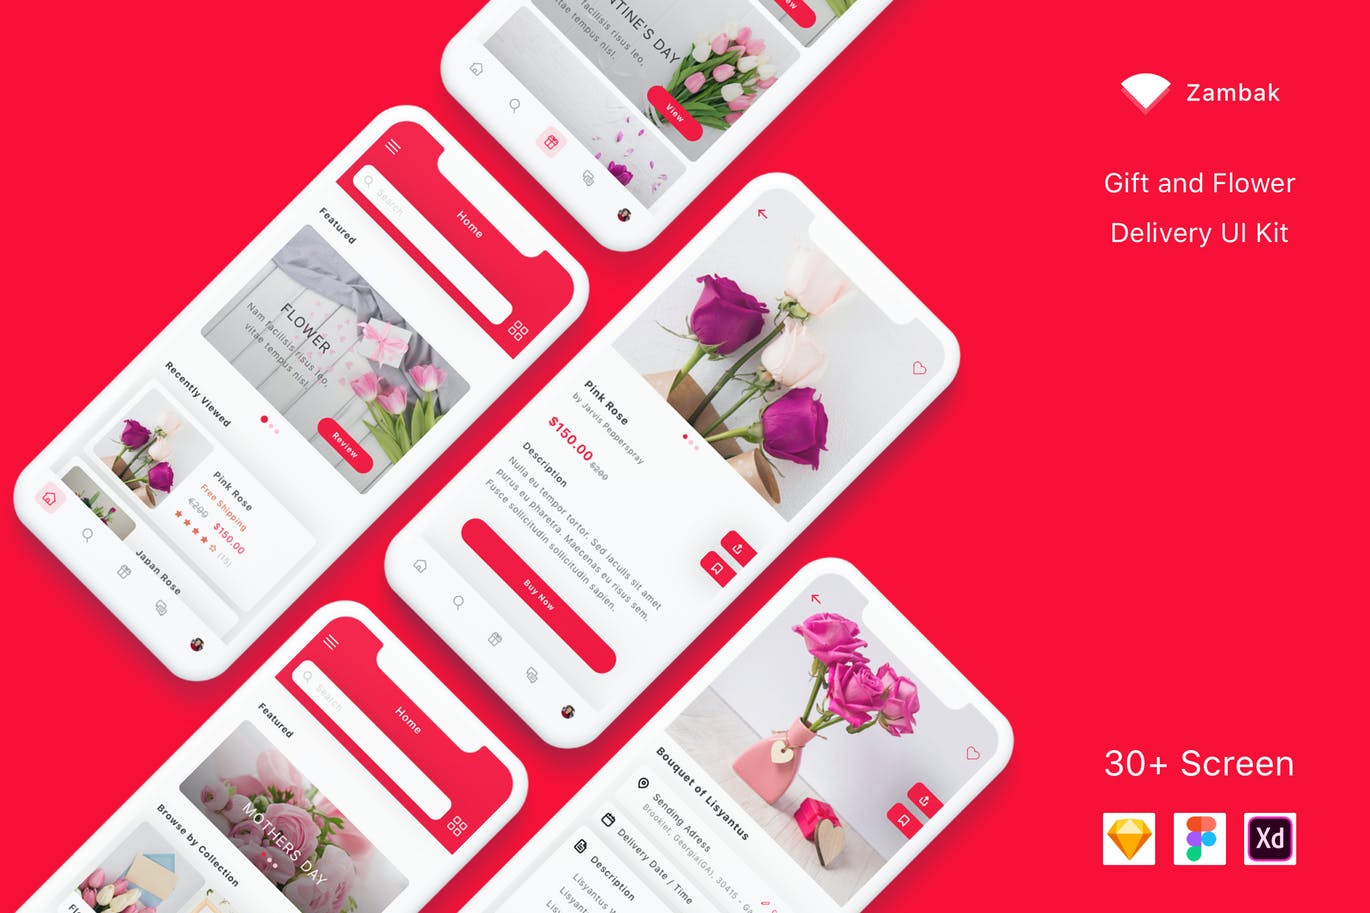 礼品&鲜花预订服务APP应用UI设计素材库精选套件 Zambak – Gift and Flower Delivery App UI Kit插图